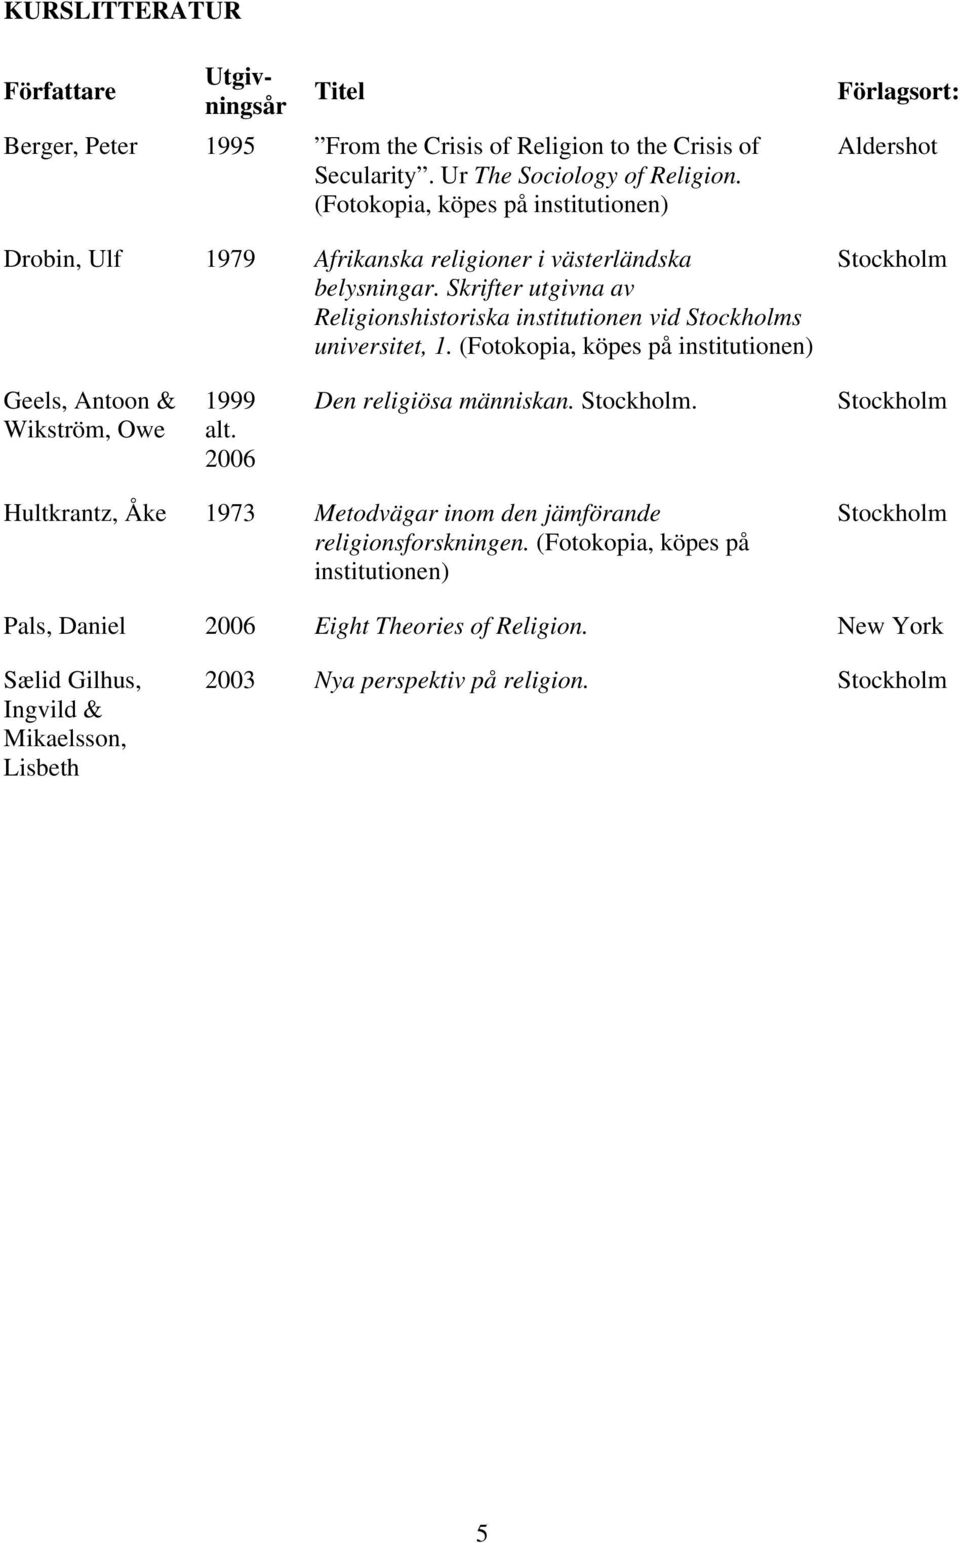 Skrifter utgivna av Religionshistoriska institutionen vid s universitet, 1. (Fotokopia, köpes på institutionen) Förlagsort: Aldershot Geels, Antoon & Wikström, Owe 1999 alt.